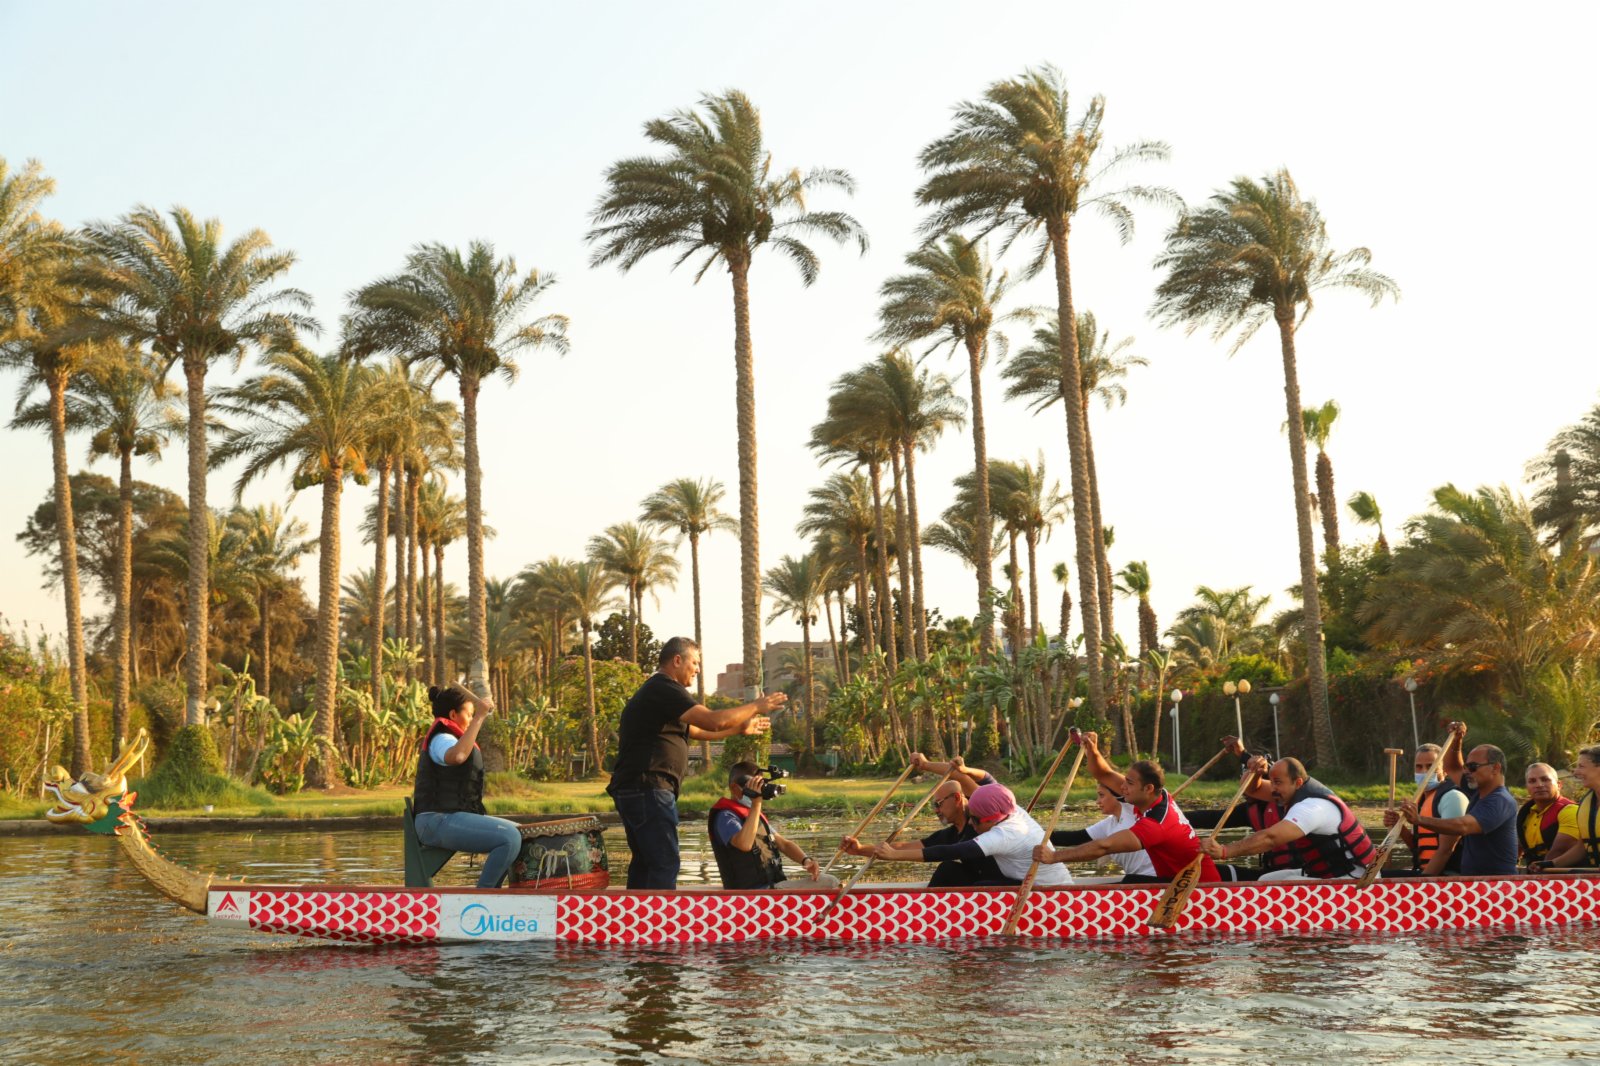 在埃及首都開羅，埃及龍舟文化體驗基地的龍舟隊在尼羅河上進行龍舟競賽。